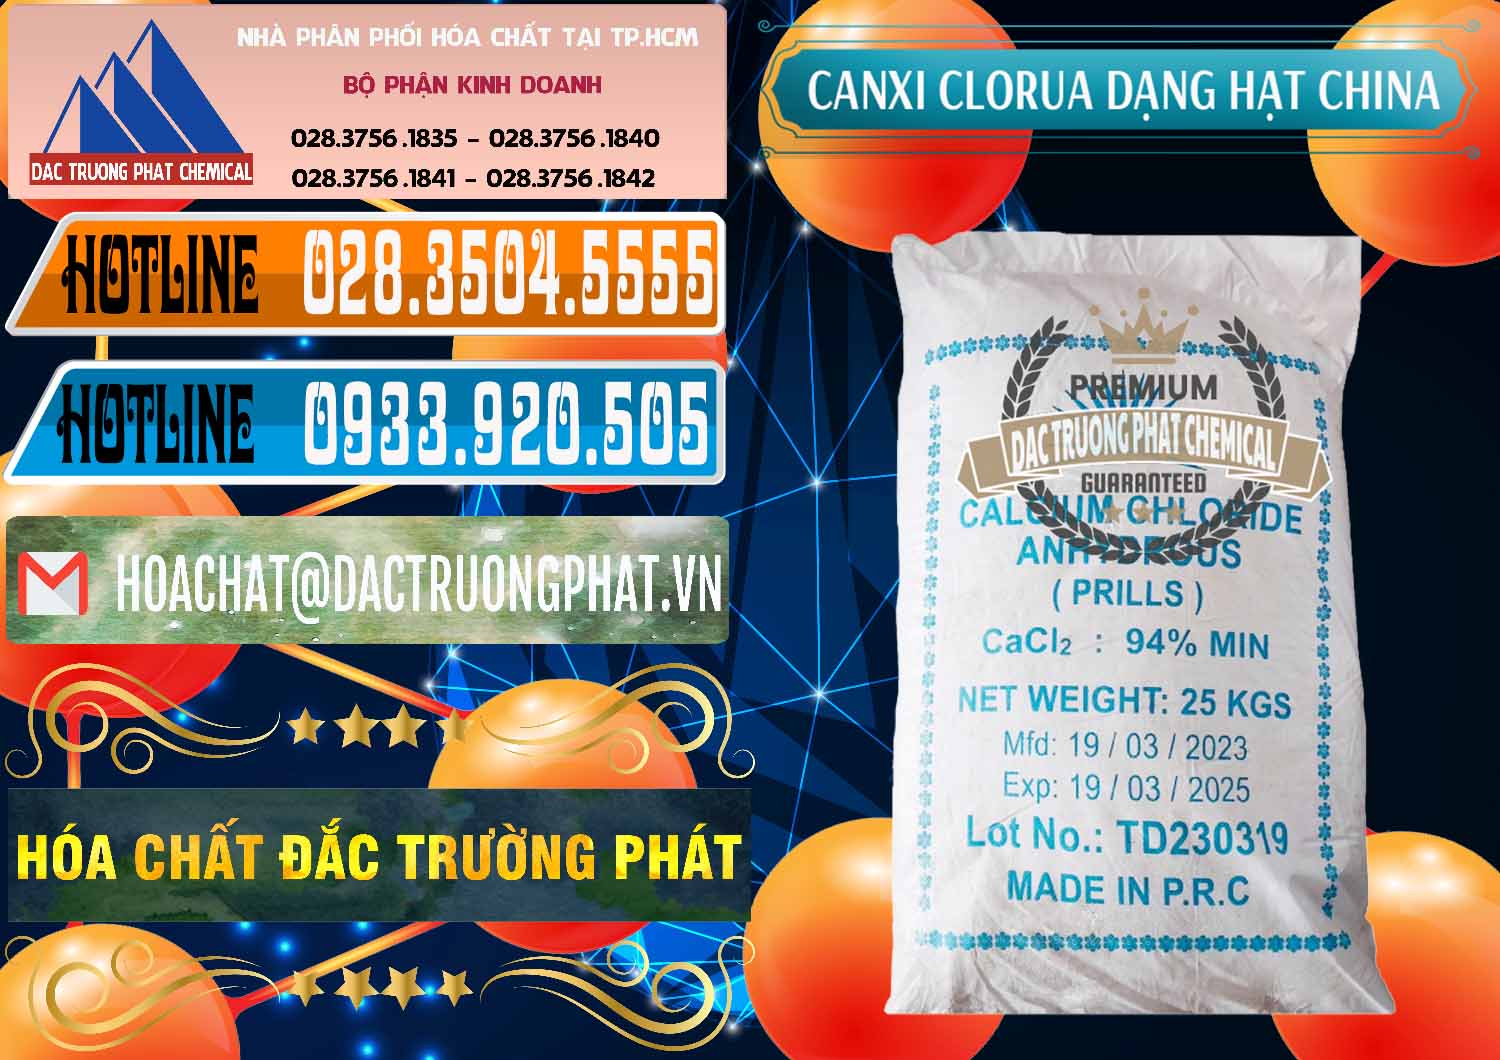 Đơn vị cung ứng & bán CaCl2 – Canxi Clorua 94% Dạng Hạt Trung Quốc China - 0373 - Công ty cung cấp và nhập khẩu hóa chất tại TP.HCM - stmp.net